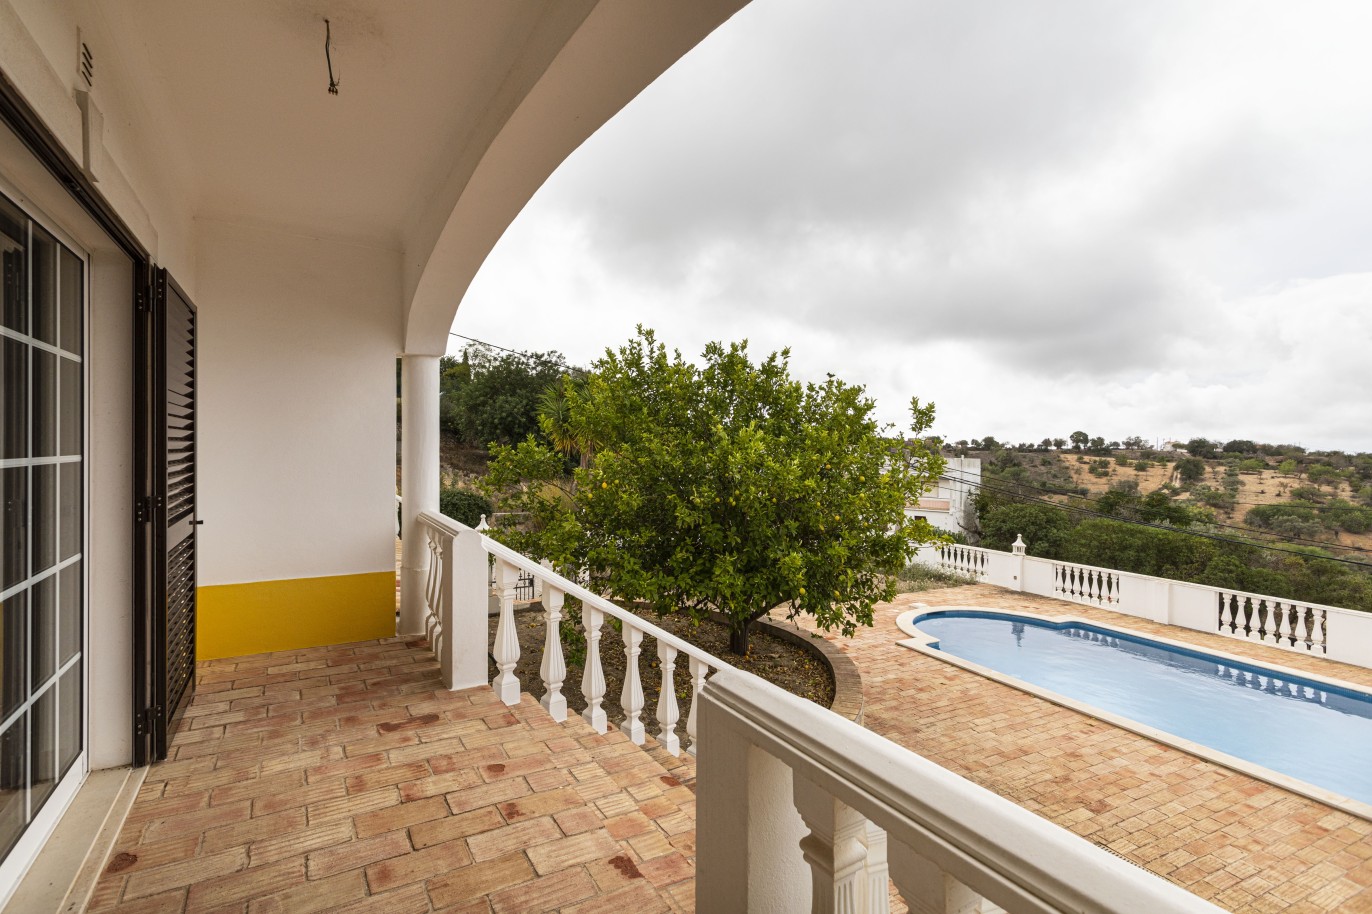 Moradia V4, com piscina, para venda, em Boliqueime, Loulé, Algarve_242648